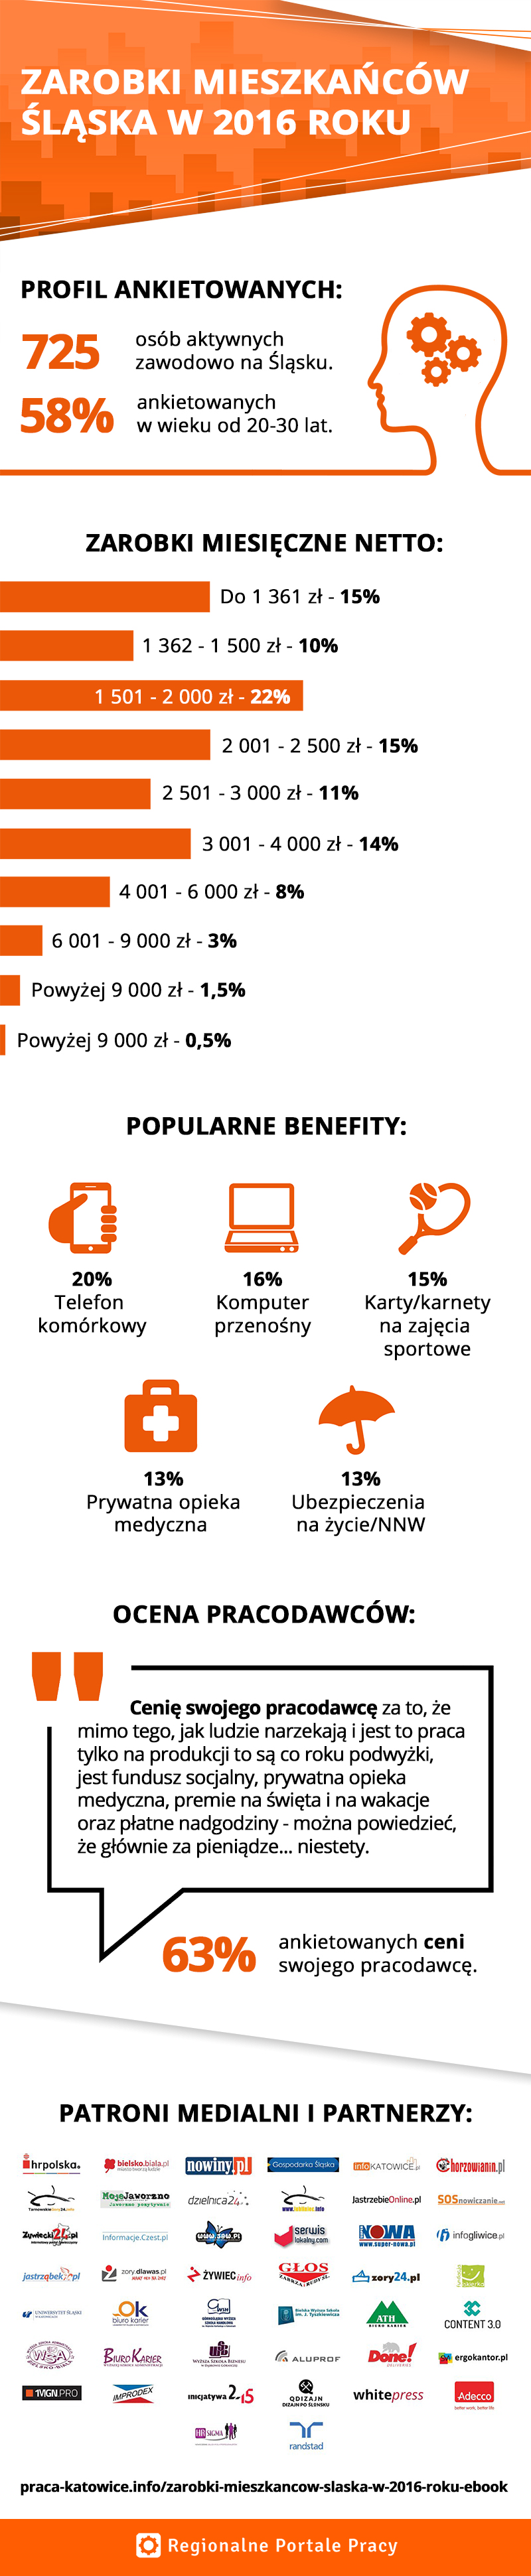 infografika - zarobki mieszkańców Śląska 